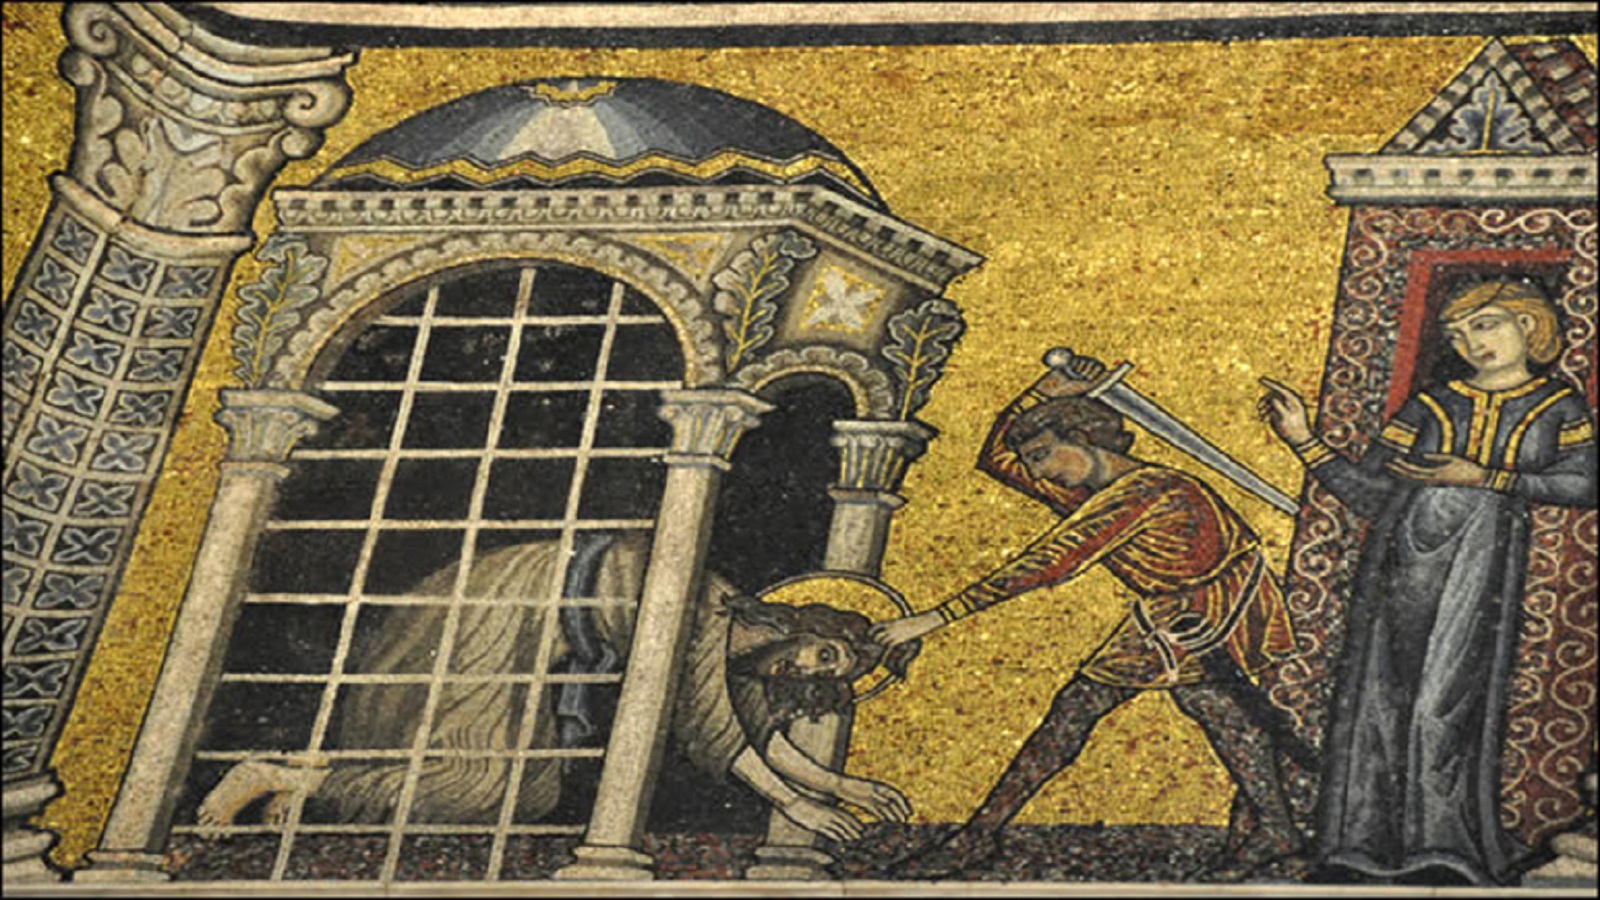 قطع رأس يوحنا المعمدان، فسيفساء من القرن الثالث عشر، كنيسة يوحنا المعمدان في البندقية.